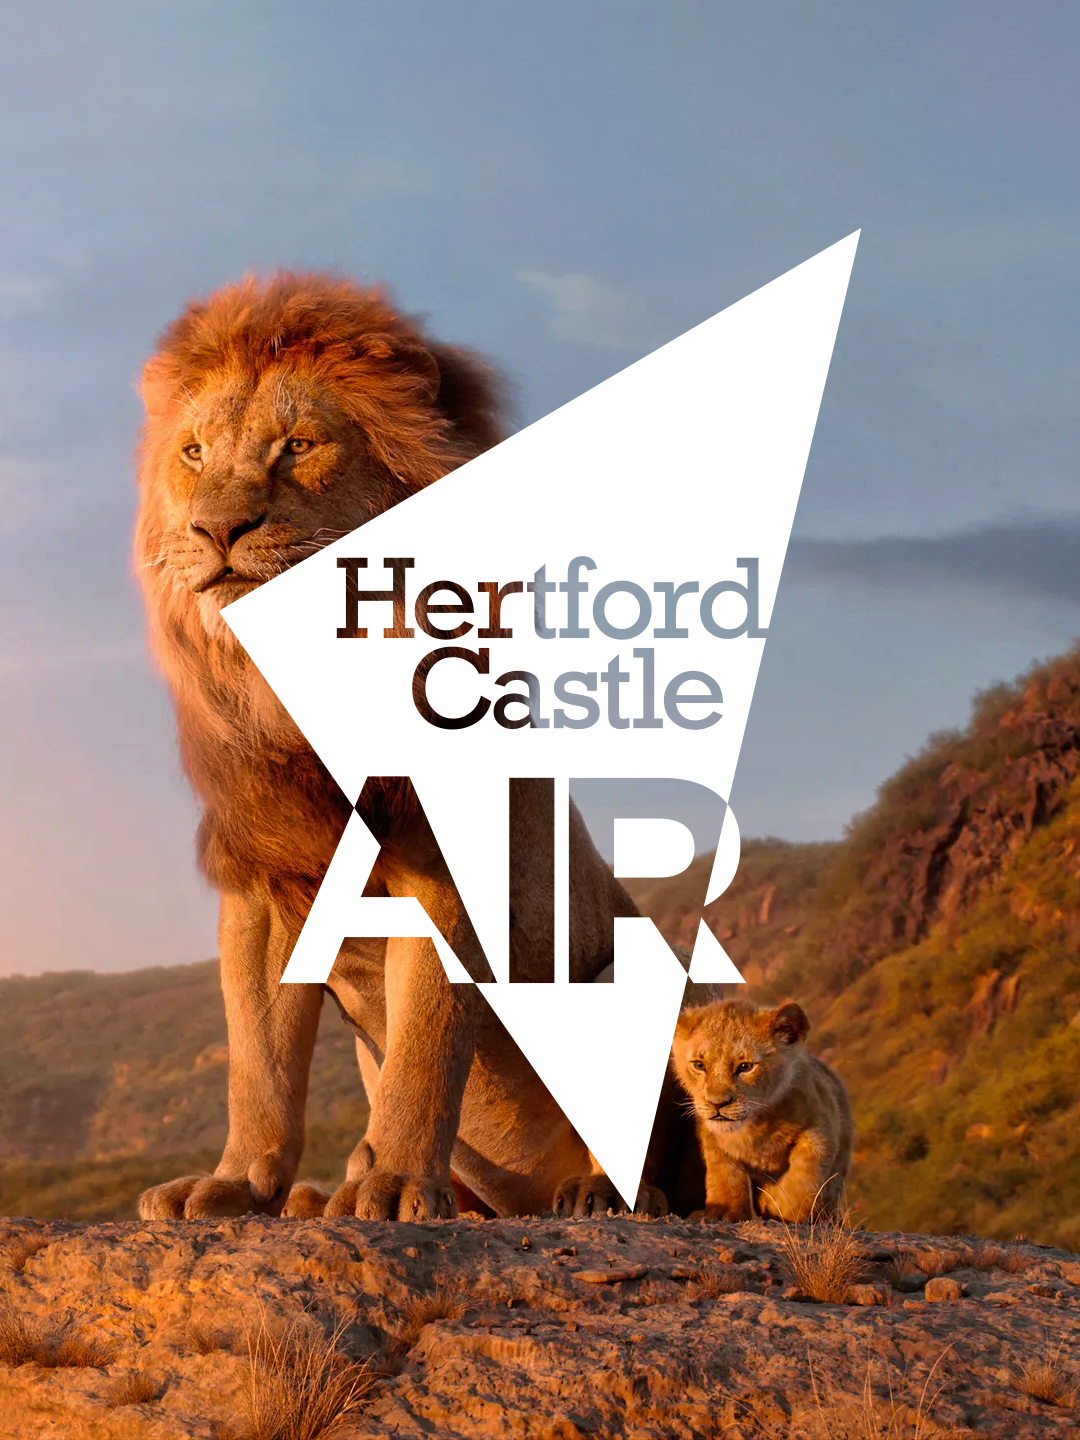 Hertford Castle's open-air brand mark design over Disney's Lion King.